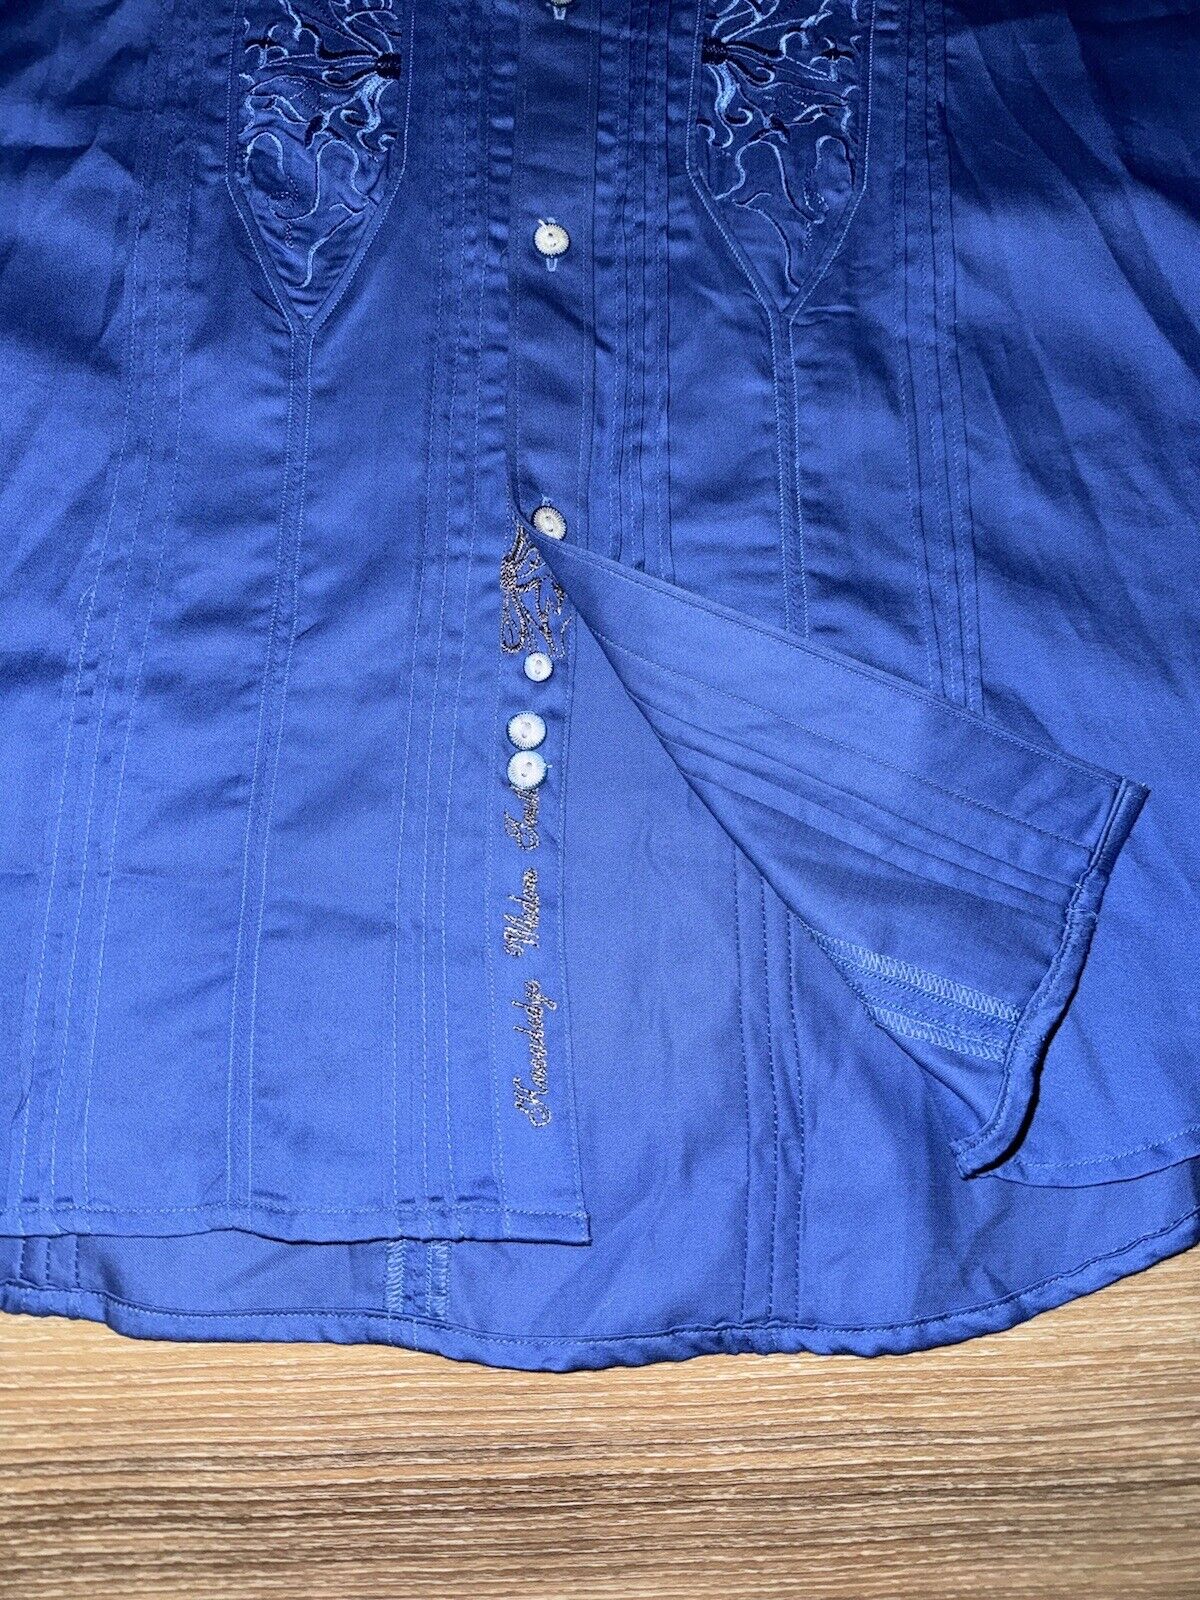 Robert Graham Embroidered Flip Cuff Dress Shirt M… - image 4